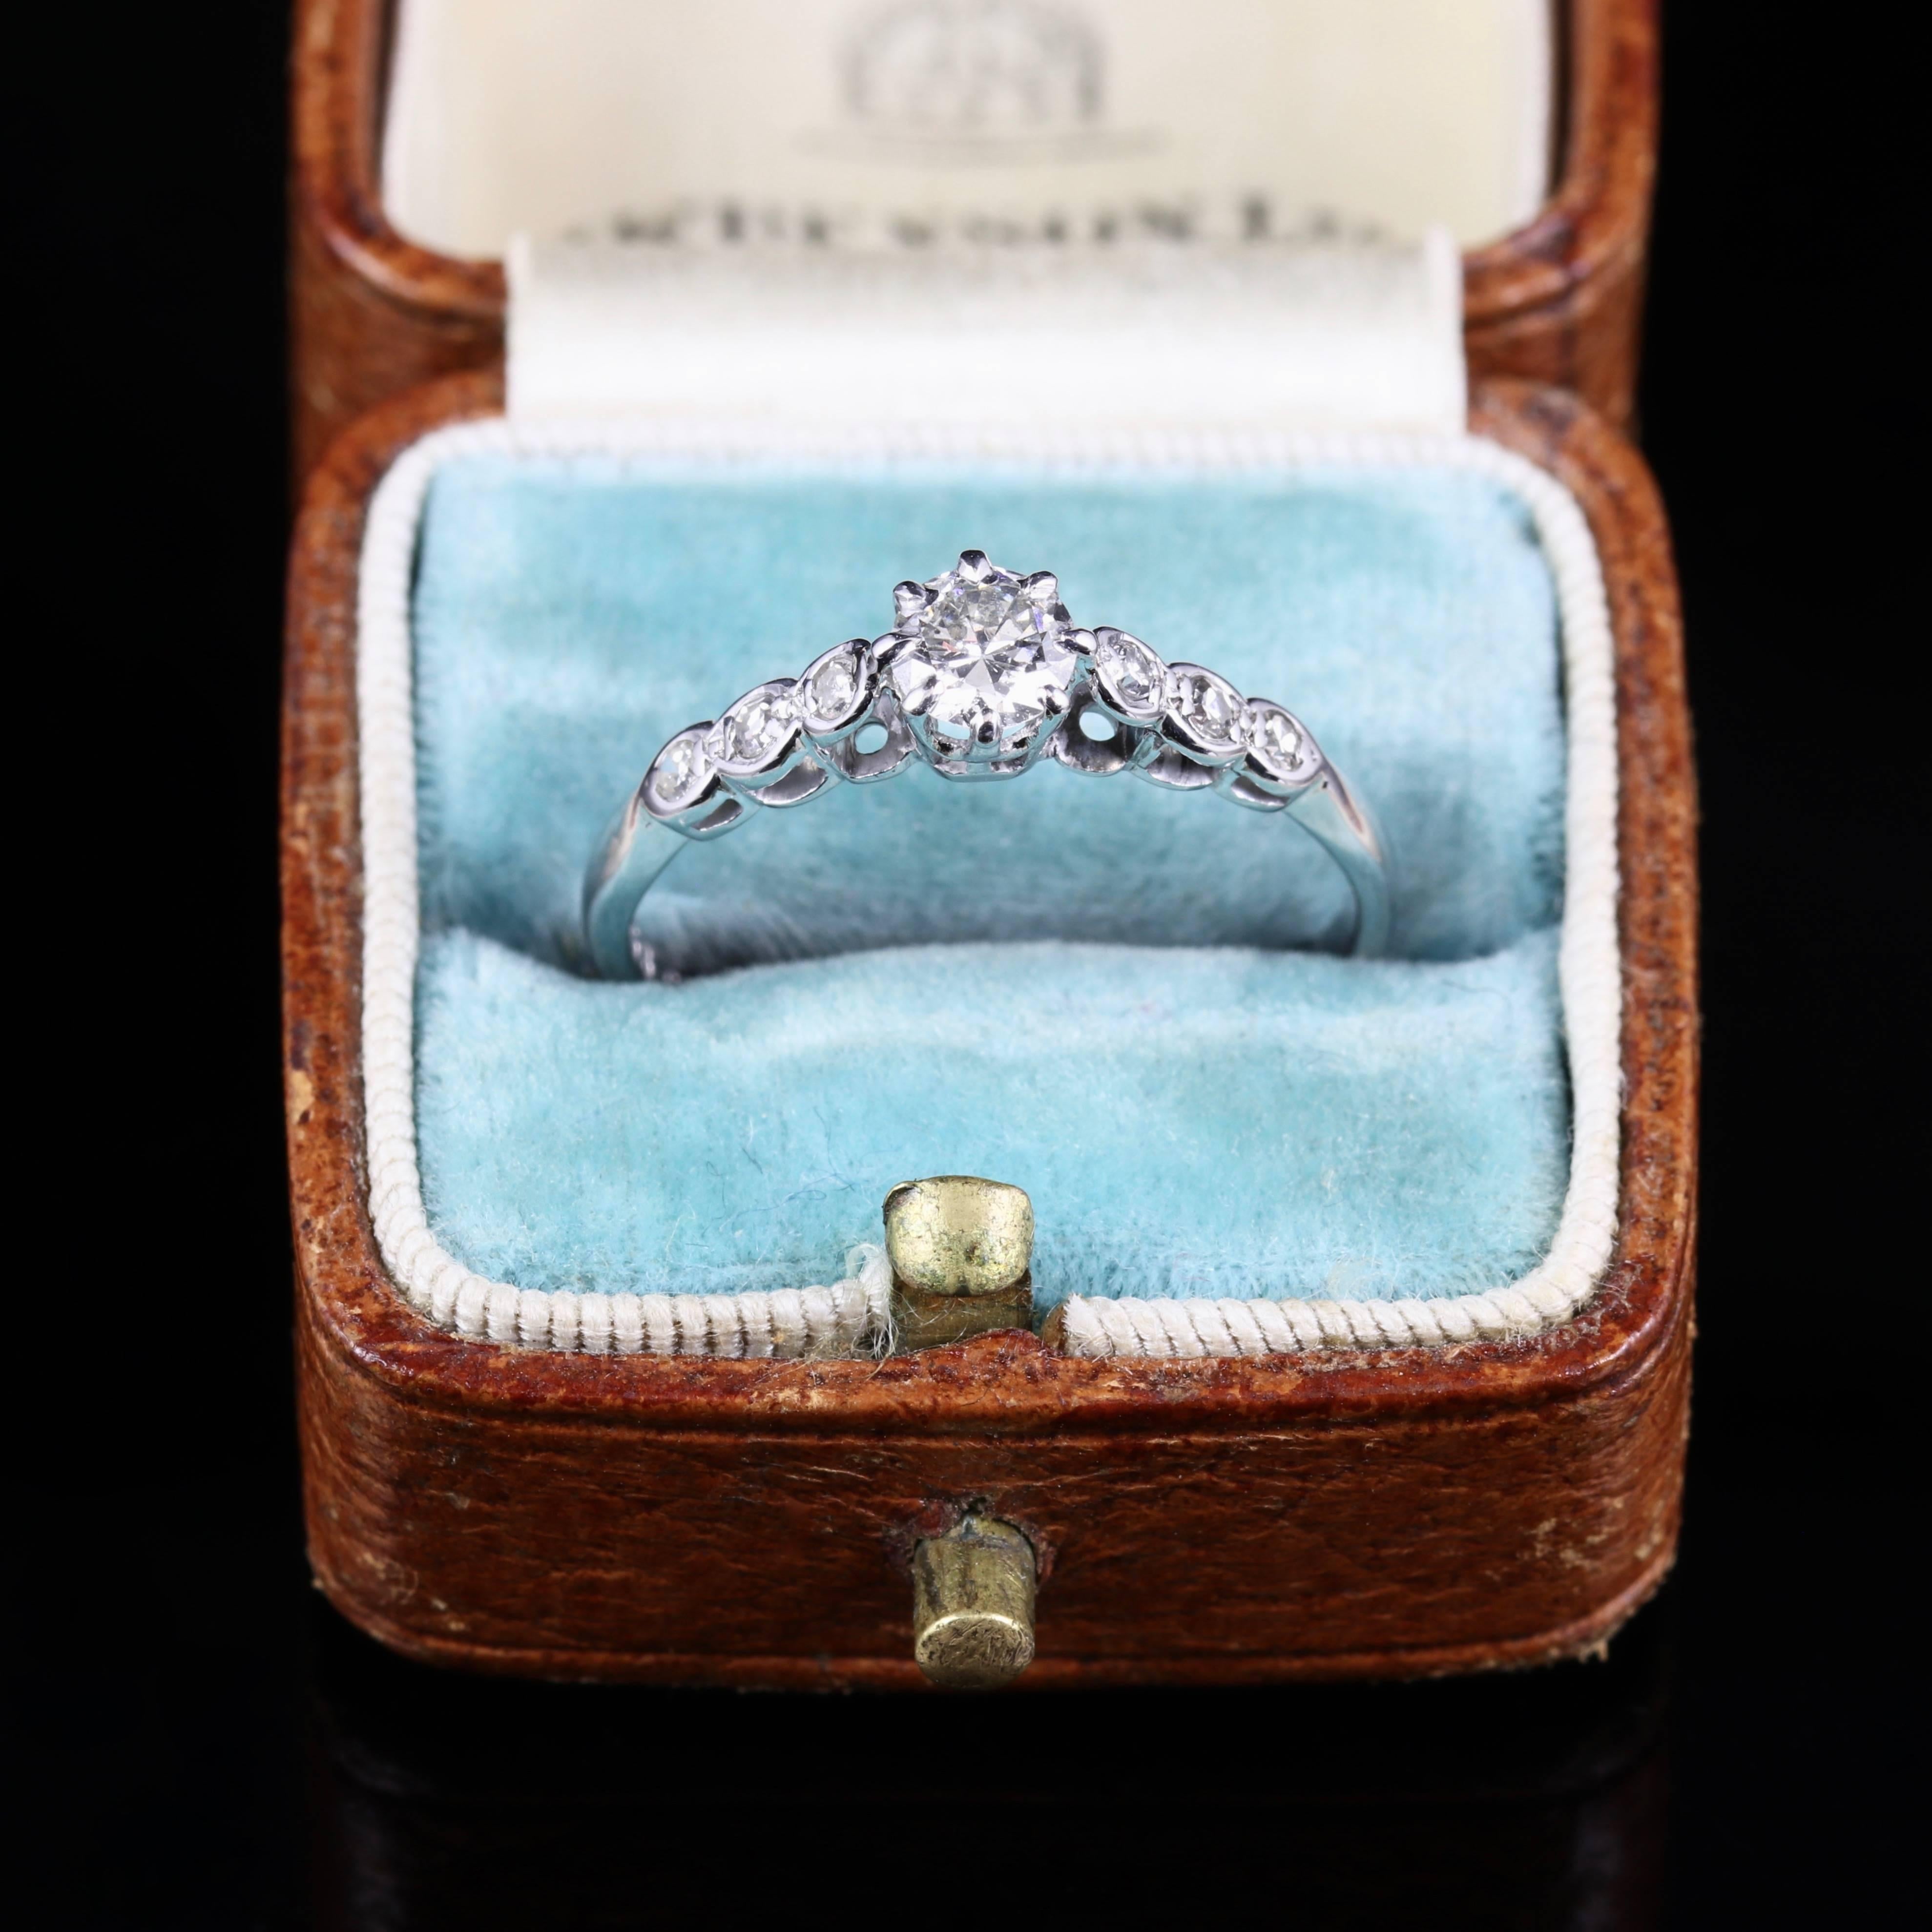 Antique Edwardian Diamond Engagement Ring 18 Carat White Gold, circa 1915 3